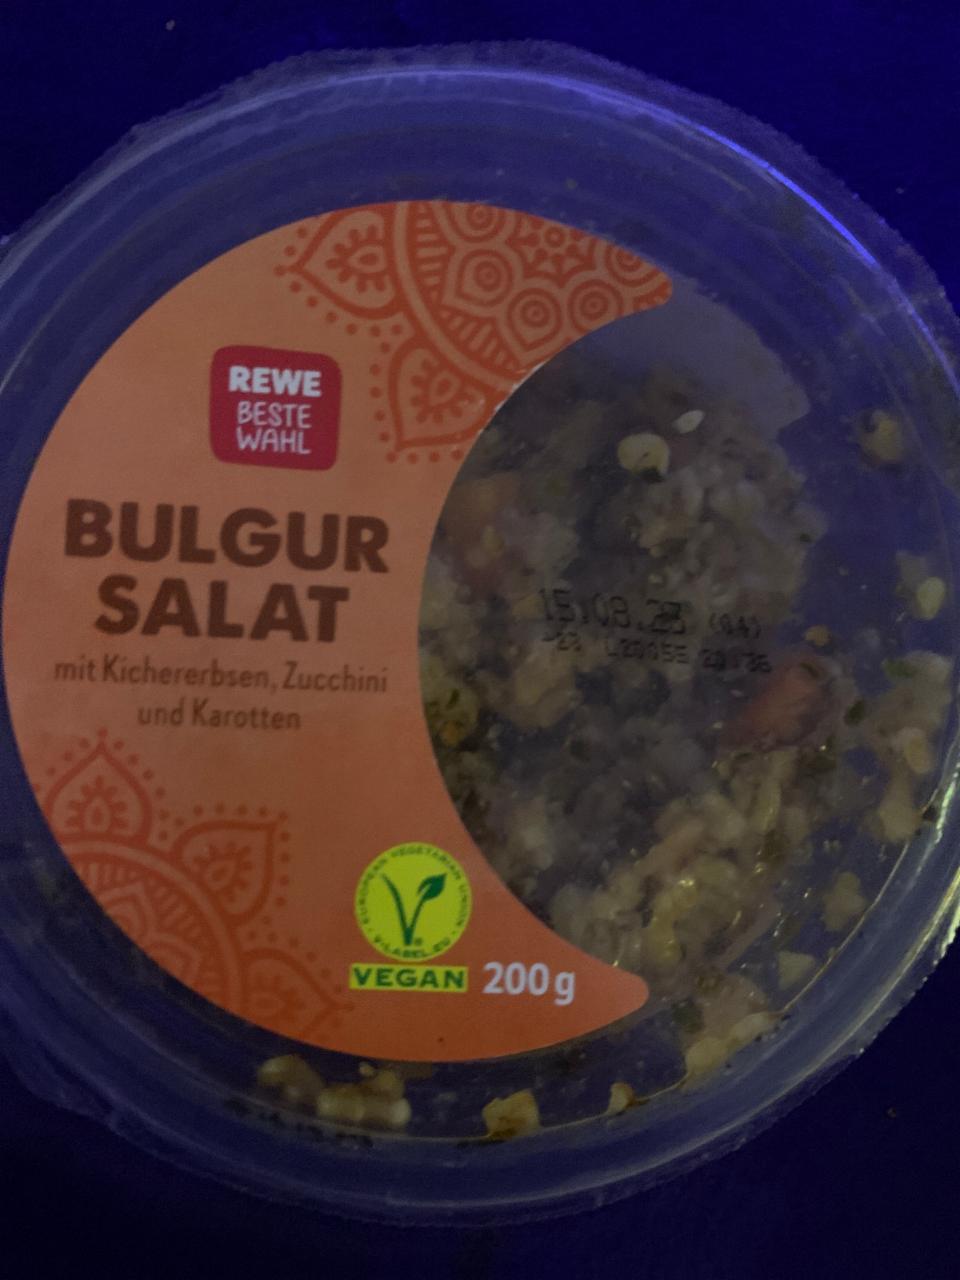 Fotografie - Bulgur Salat, Mit Kichererbsen, Zucchini und Karotten Rewe beste wahl